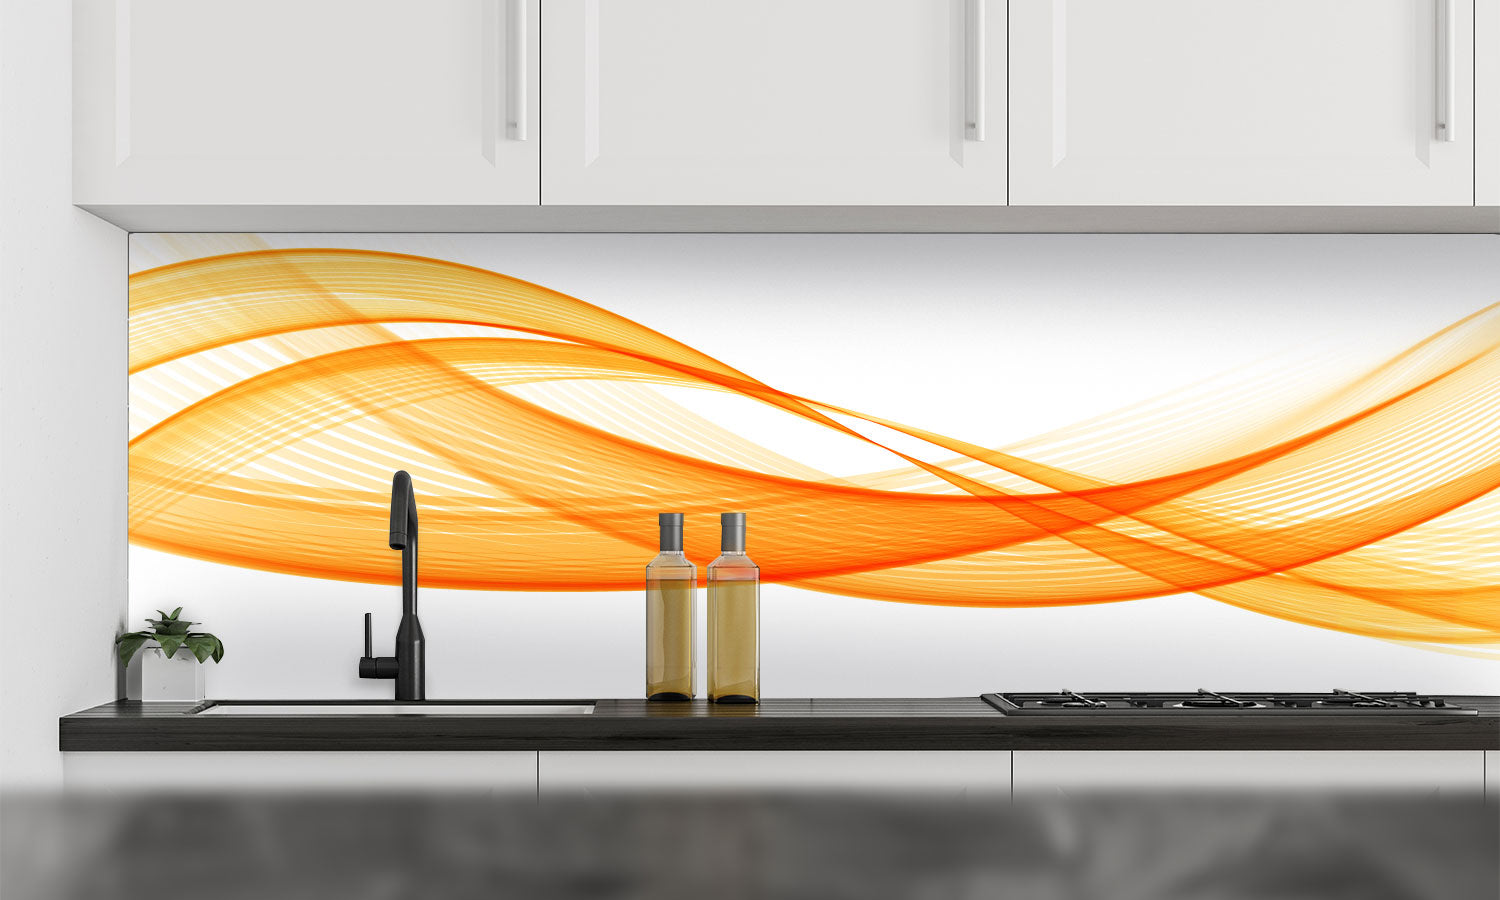 Kuhinjski paneli   Orange strip - Stekleni / PVC plošče / Pleksi steklo - s tiskom za kuhinjo, Stenske obloge PKU043 - Life-decor.si